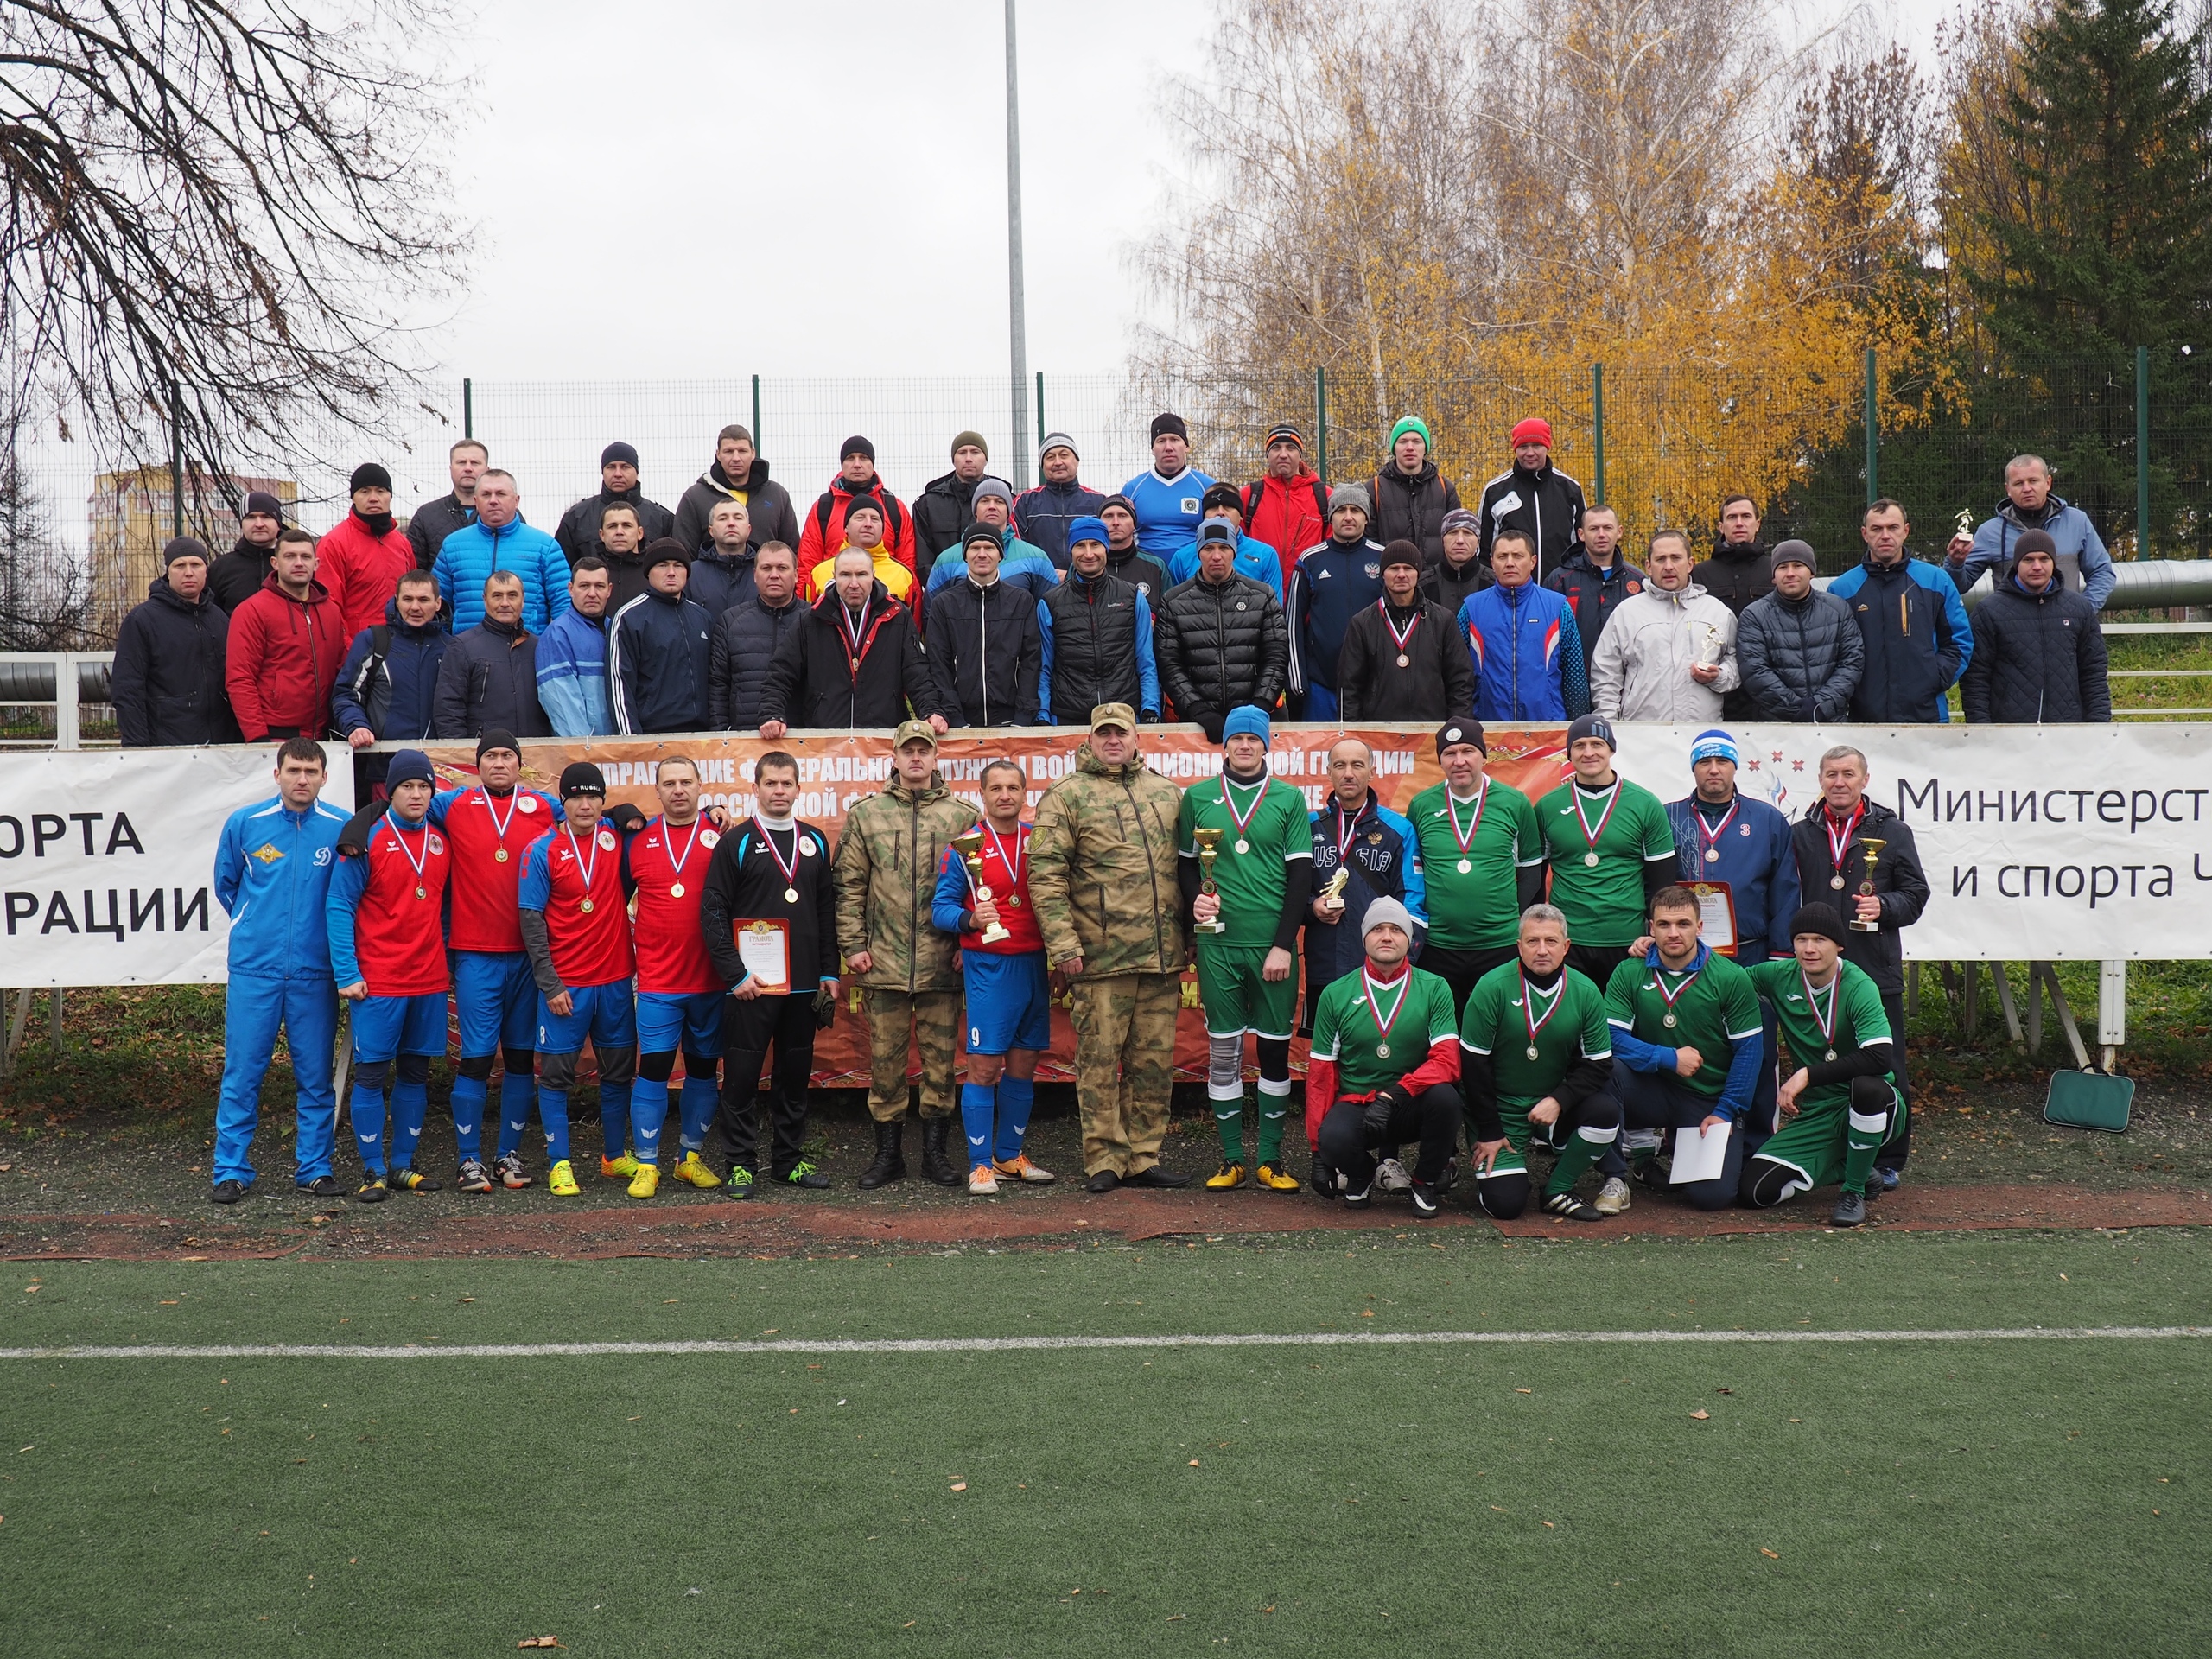 Команда Управления Росгвардии по Пермскому краю заняла призовое место в Чемпионате Приволжского округа Росгвардии по мини-футболу 